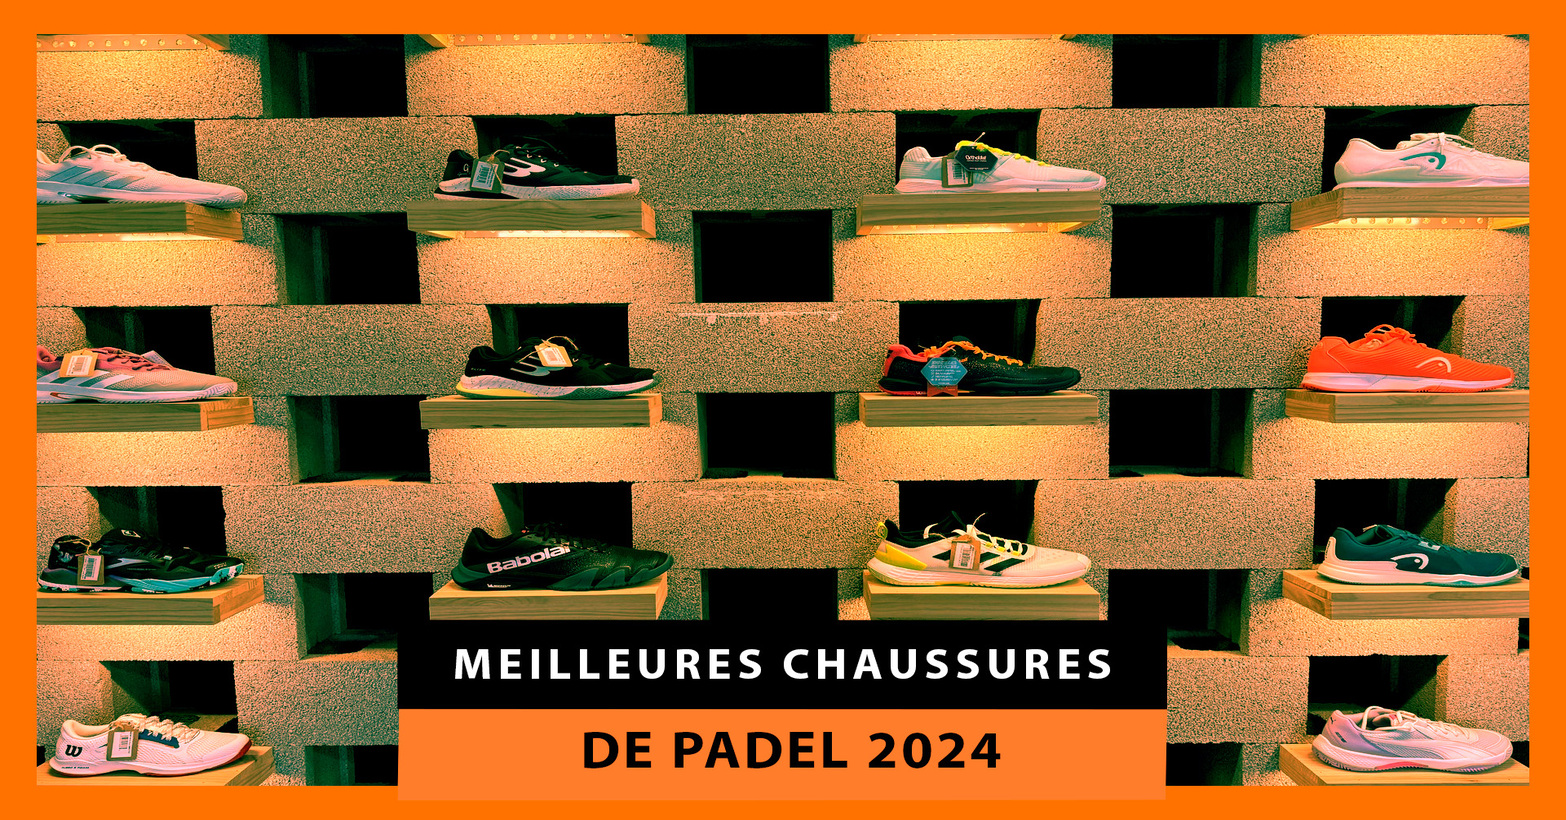 Meilleures chaussures de padel de 2024 : conçues pour les joueurs les plus exigeants